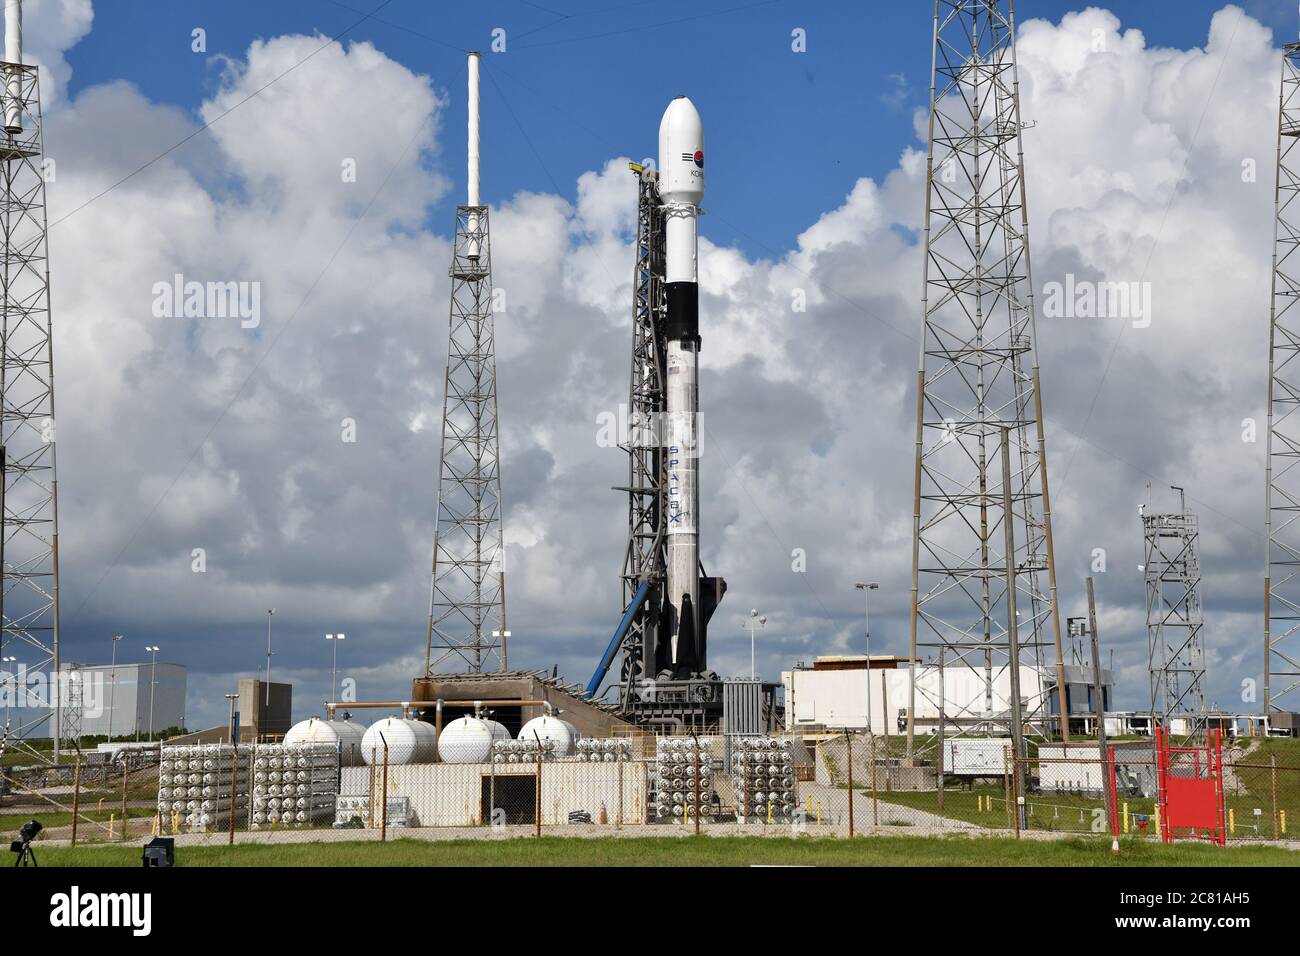 Cape Canaveral, Stati Uniti. 20 luglio 2020. SpaceX prepara il suo razzo Falcon 9 per lanciare un satellite di comunicazione per i militari sudcoreani dal complesso 40 presso la stazione dell'aeronautica di Cape Canaveral. Florida il lunedì 20 luglio 2020. Foto di Joe Marino/UPI Credit: UPI/Alamy Live News Foto Stock